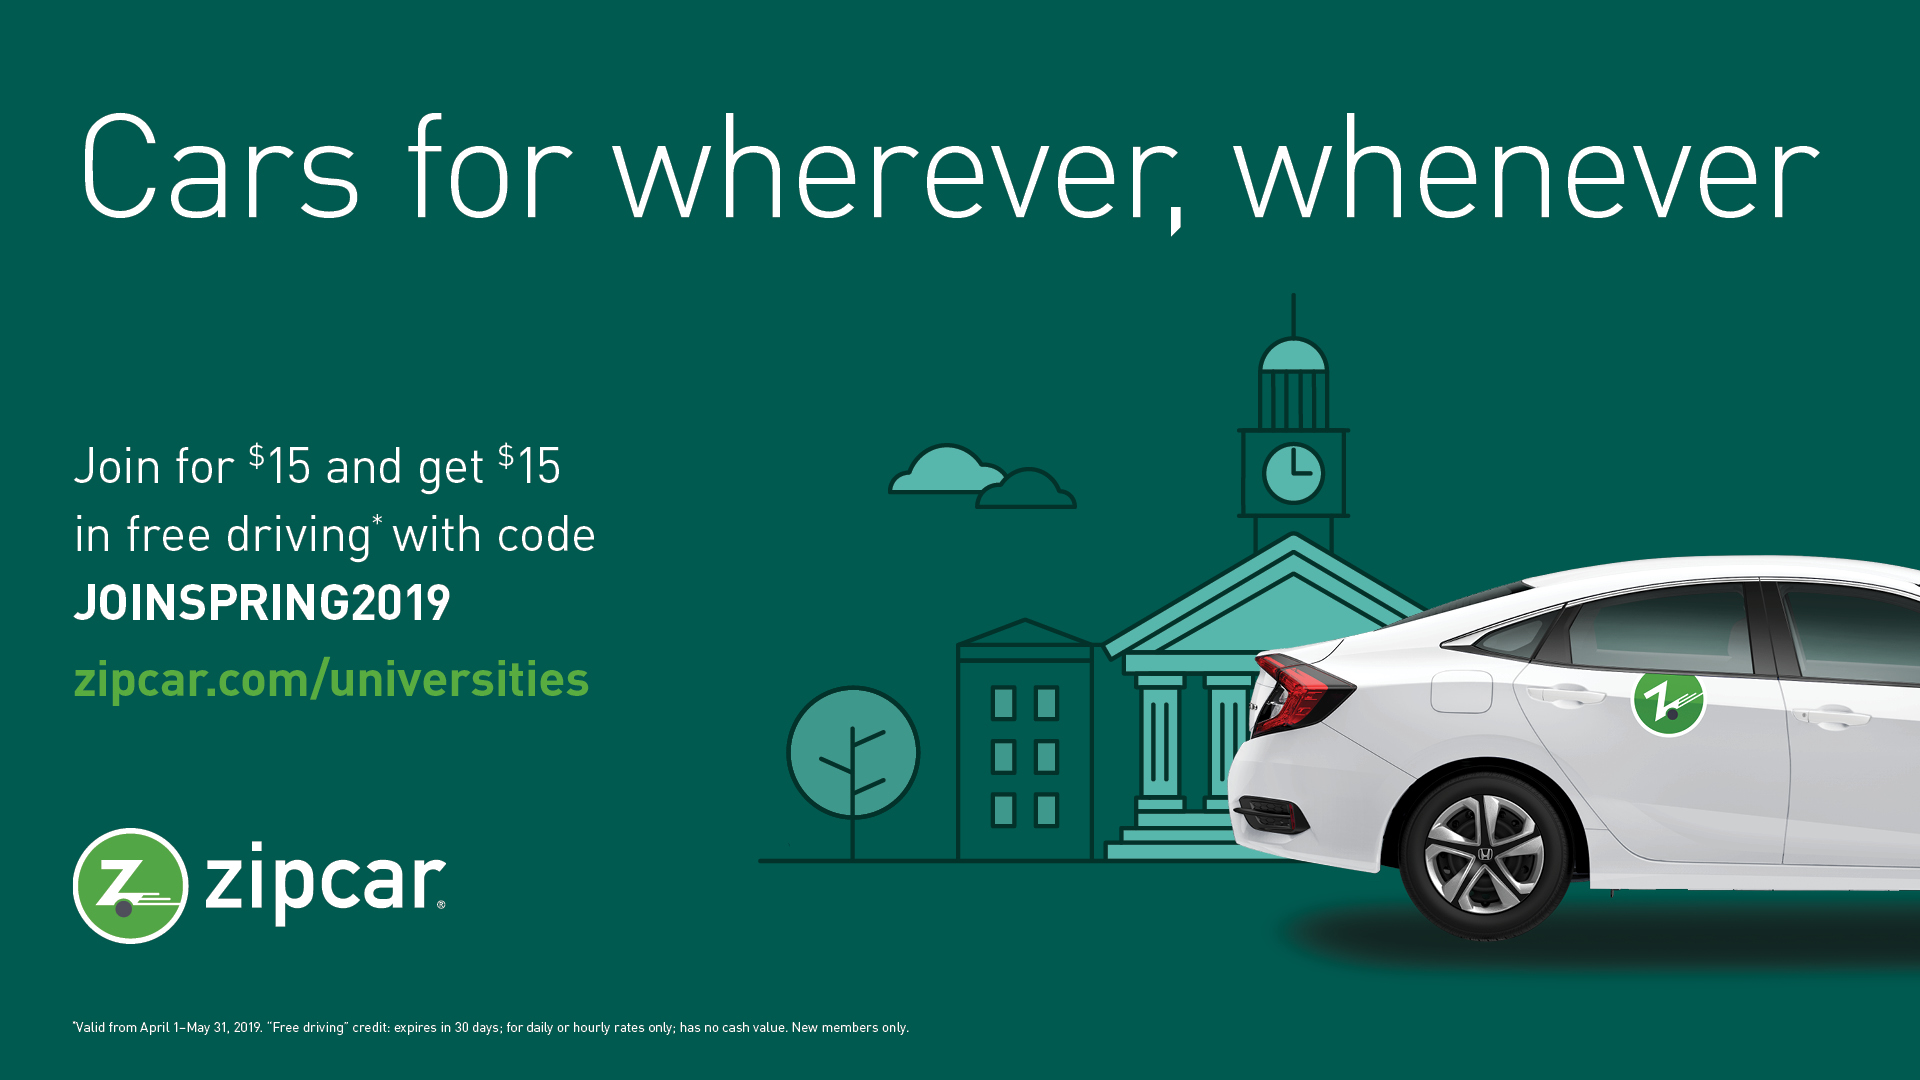 Zipcar membership is $15